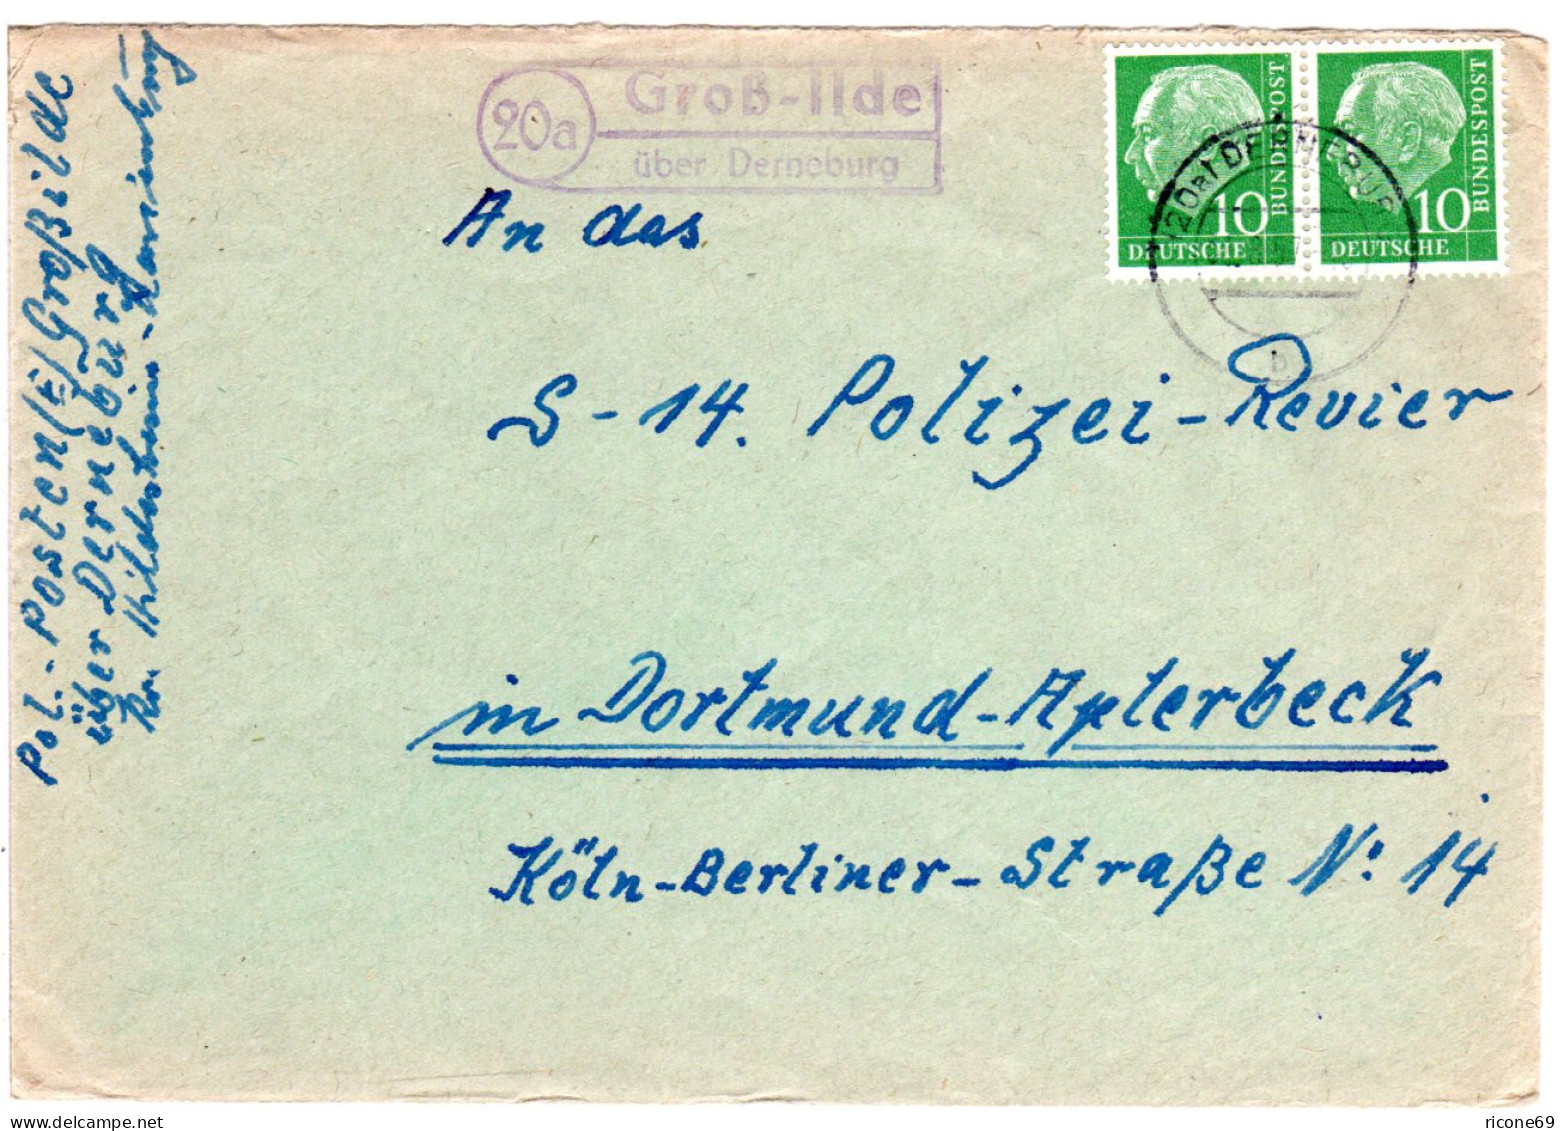 BRD 1957, Landpost Stpl. 20a GROSS-ILDE über Derneburg Auf Brief M. 2x10 Pf. - Brieven En Documenten